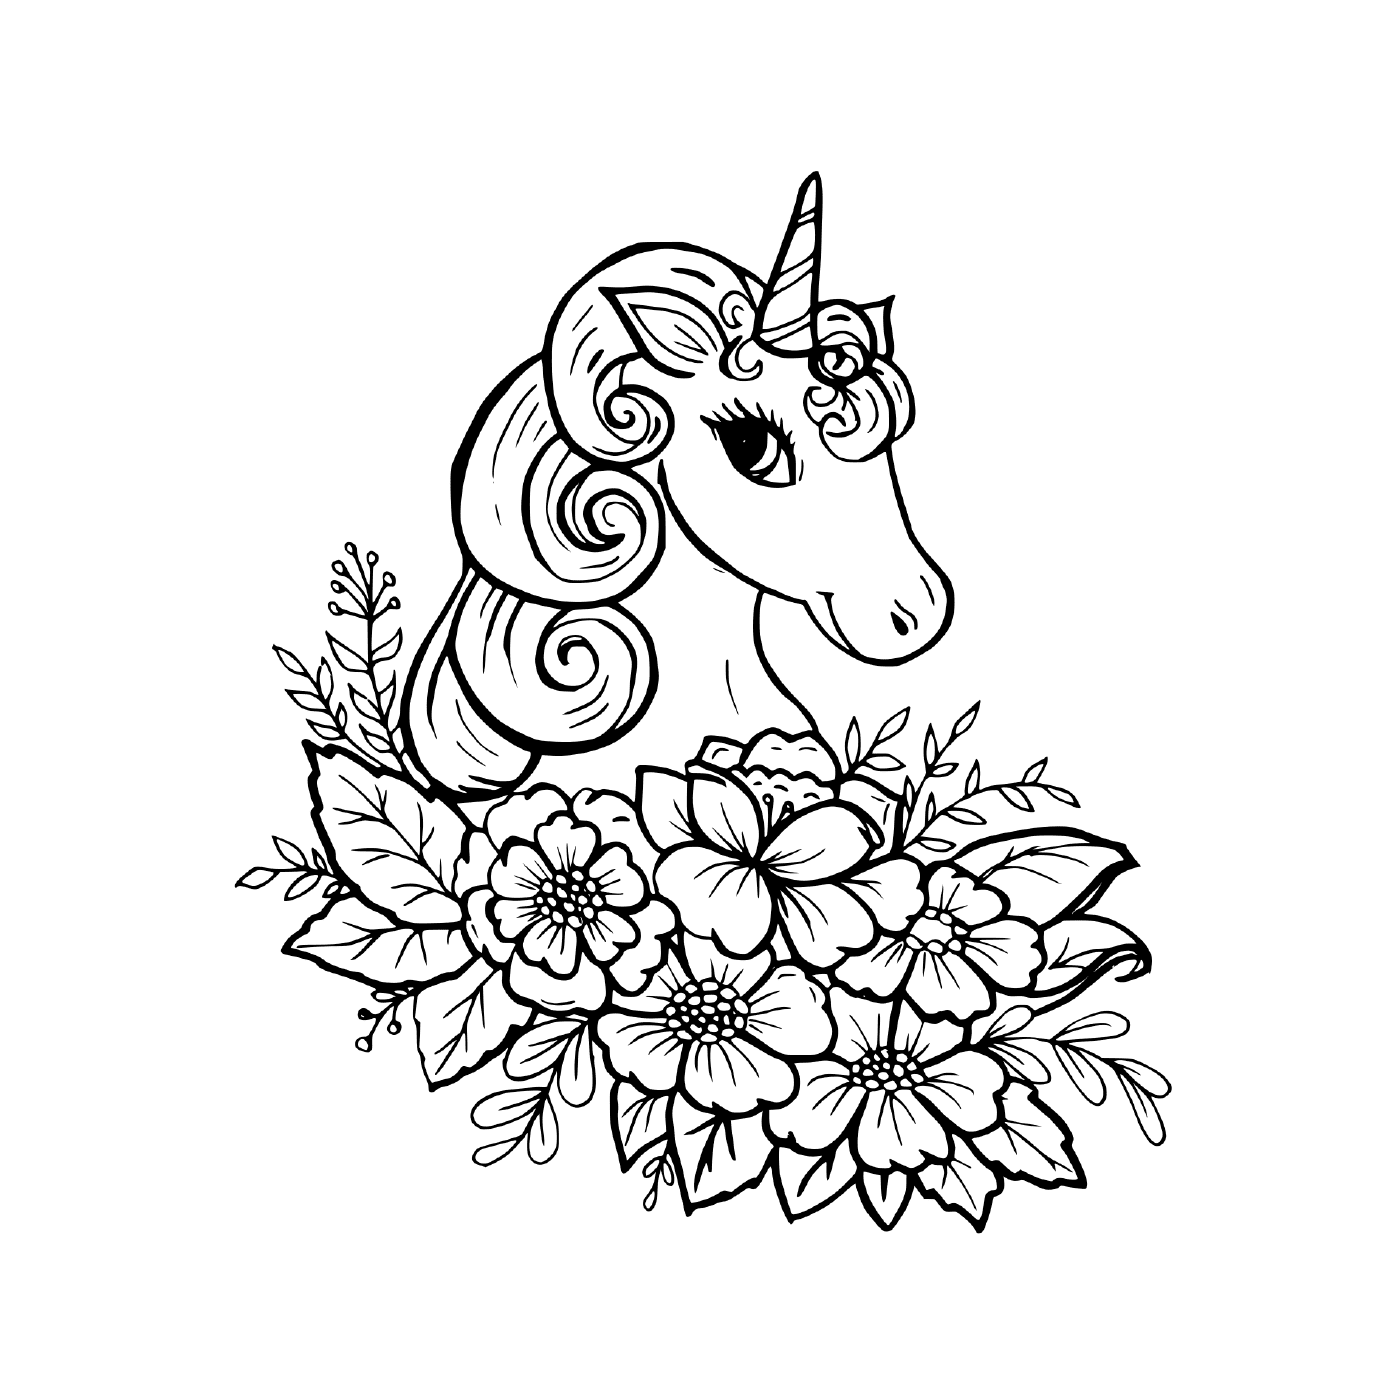  hermoso unicornio con flores 